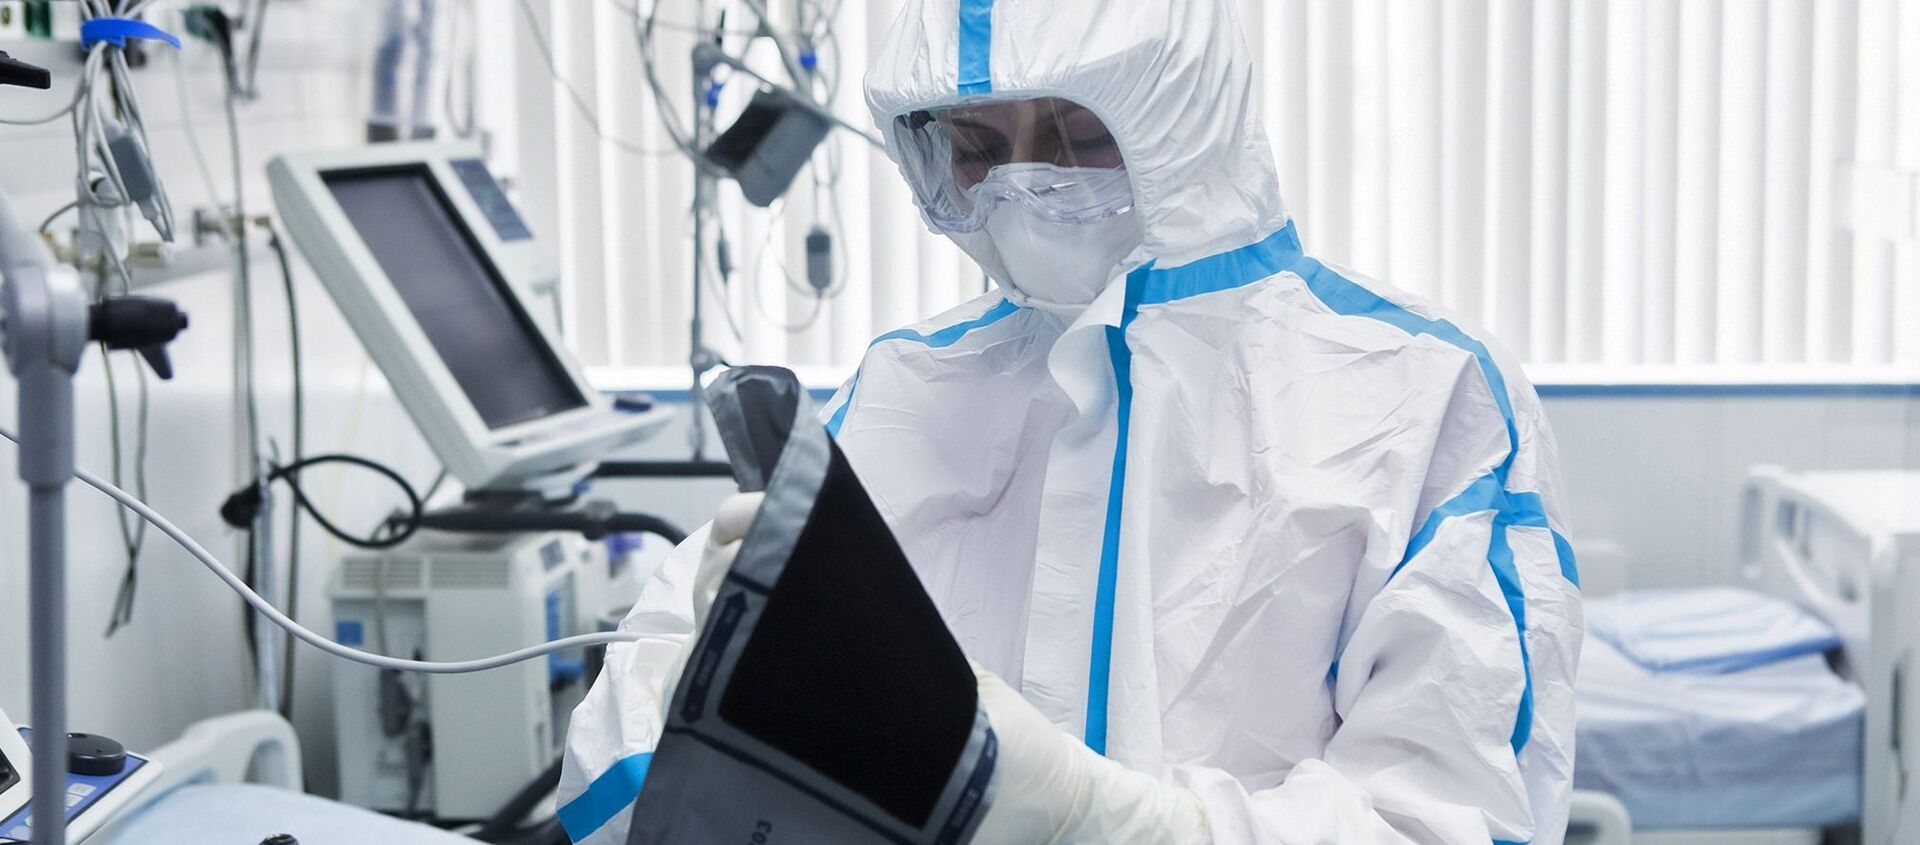 Một bác sĩ trong bộ đồ an toàn sinh học tại khu vực của tòa nhà được mô phỏng lại của M.I. Sechenov để điều trị bệnh nhân bị coronavirus. - Sputnik Việt Nam, 1920, 07.01.2021